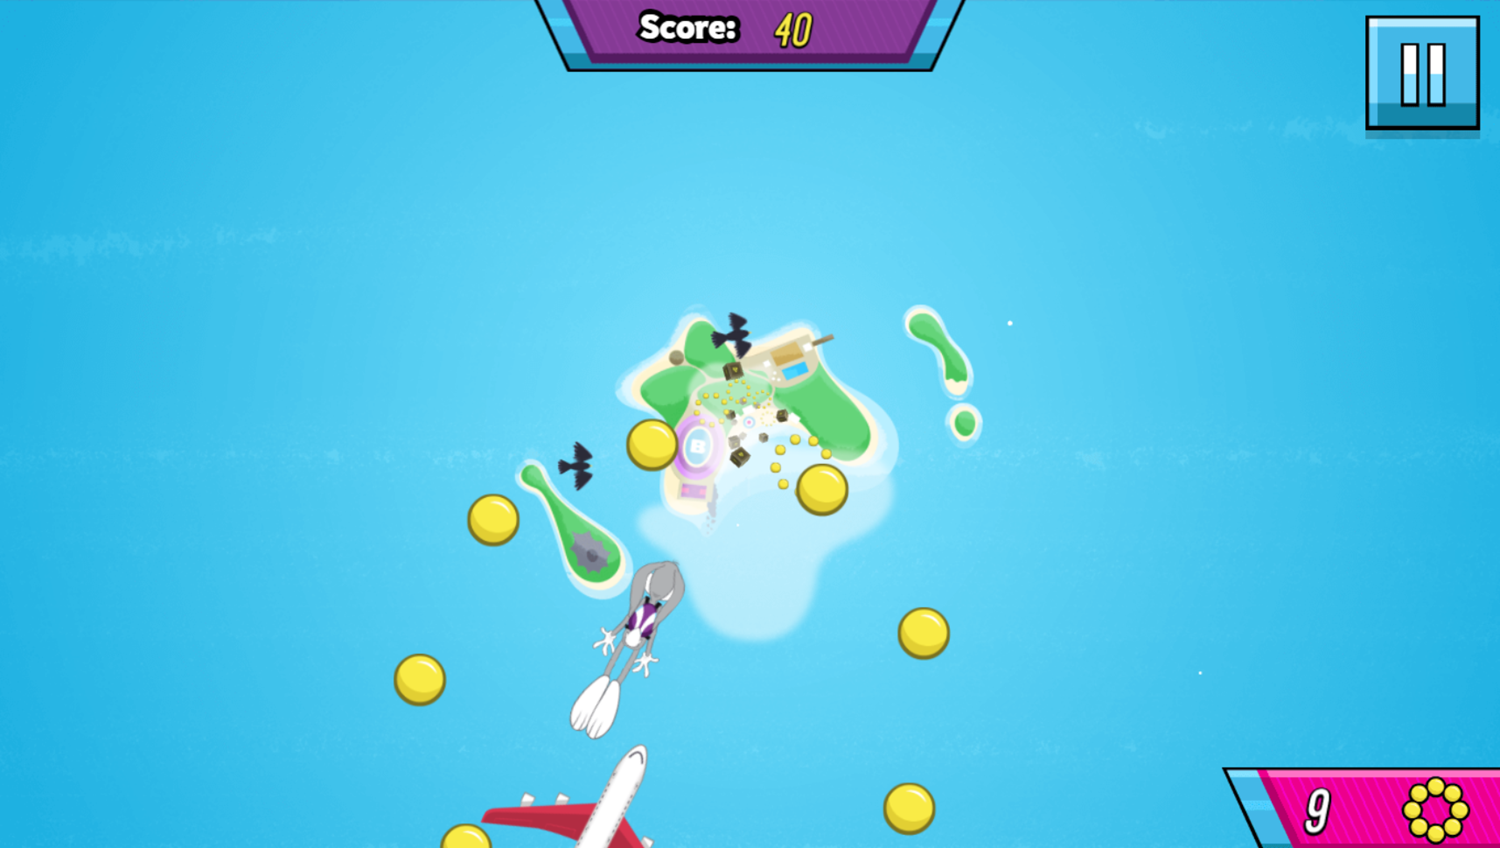 Sky Dive Game Play Screenshot.